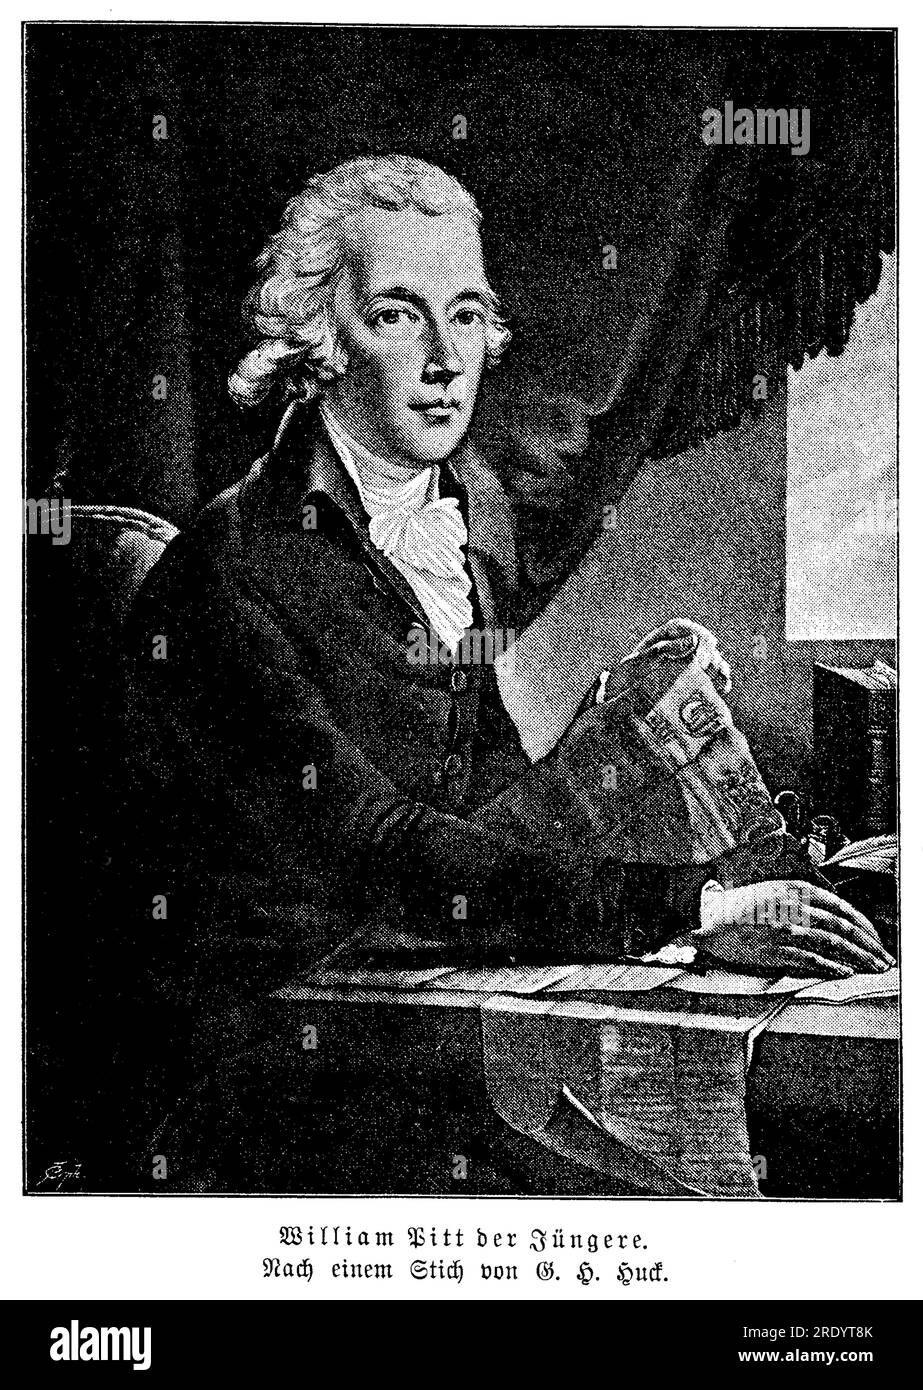 William Pitt il giovane (1759-1806) fu uno statista britannico che servì come primo ministro della Gran Bretagna dal 1783 al 1801, e di nuovo dal 1804 fino alla sua morte. Divenne primo ministro all'età di 24 anni, rendendolo la persona più giovane a ricoprire l'incarico nella storia britannica. Foto Stock